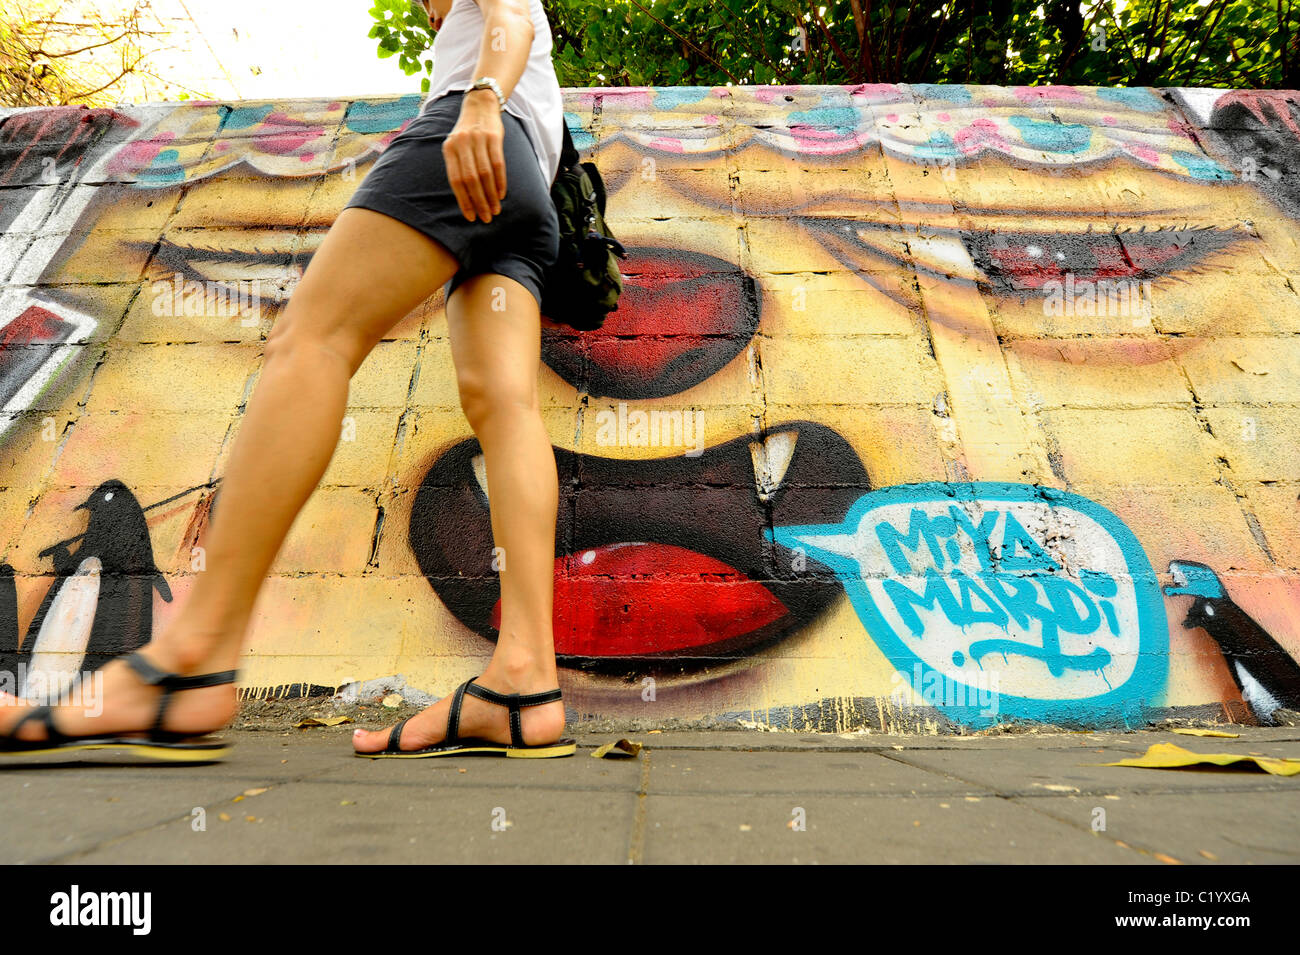 Graffiti an der Wand, Expressionismus und soziale messaging, seltsame und bizarre Kunst, Bangkok, thailand Stockfoto